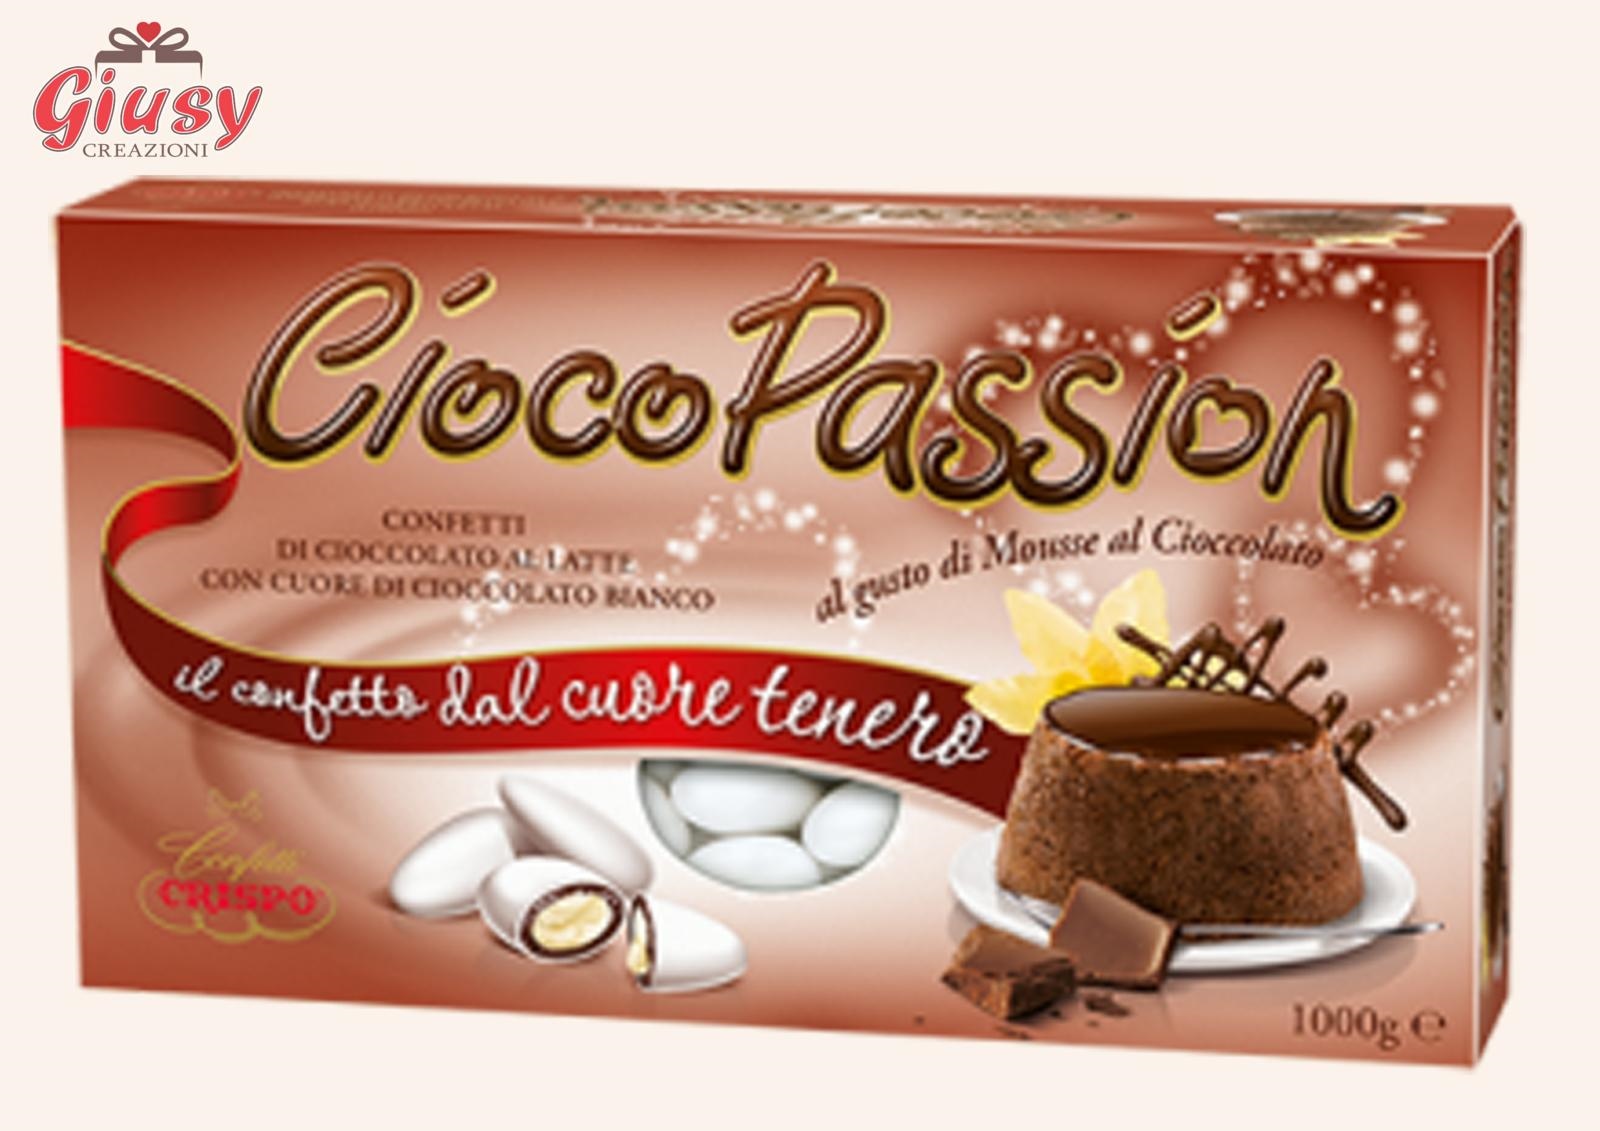 Confetti CiocoPassion Confezione 1Kg Gusto Mousse Al Cioccolato